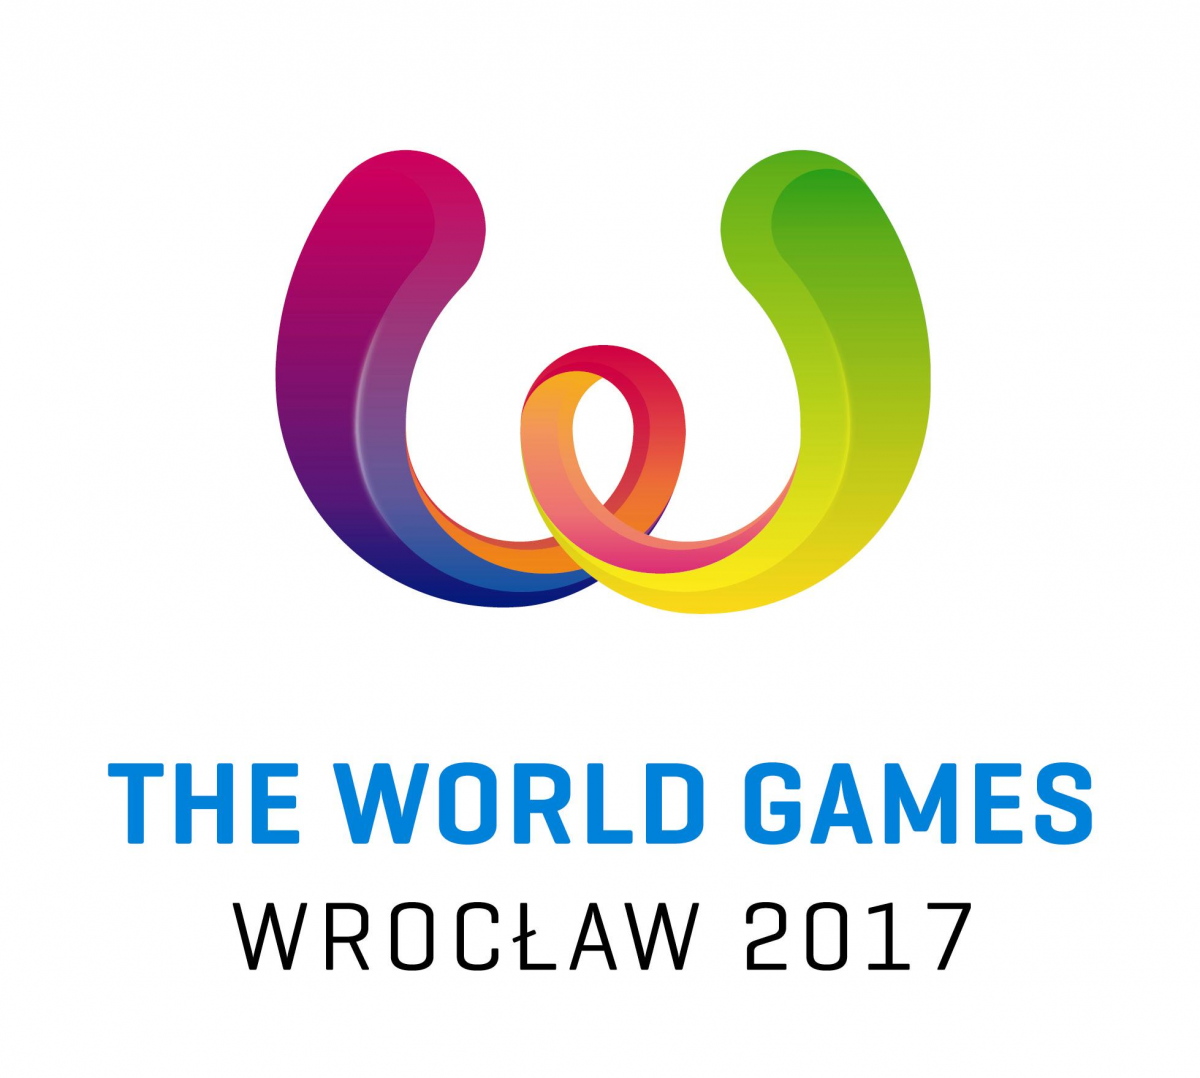 Всесвітні Ігри є своєрідним аналогом Олімпійських ігор для неолімпійських видів спорту  / фото wakoweb.com